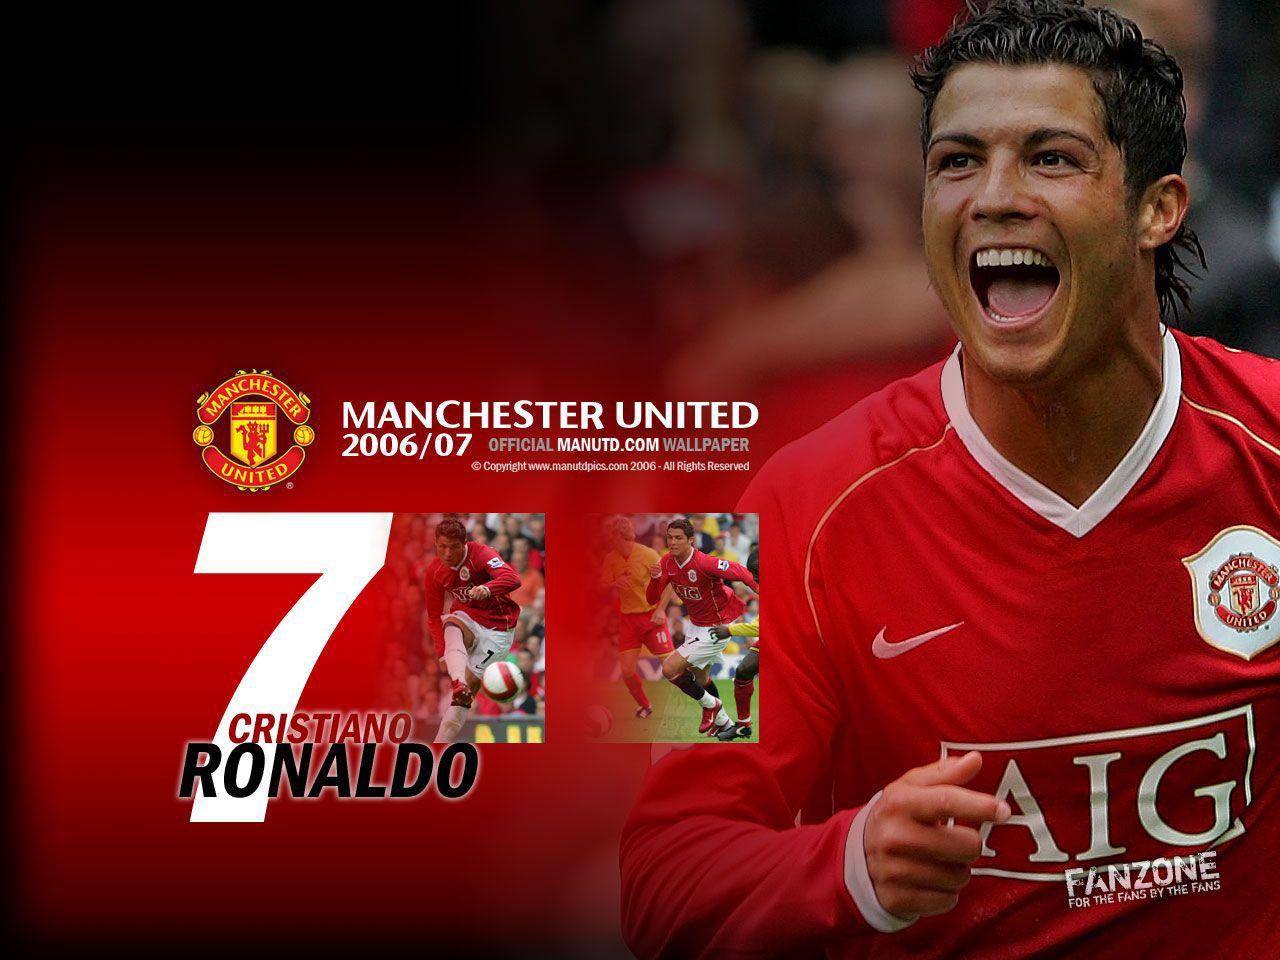 Cristiano Ronaldo 7: Manchester United wallpaper. Cristiano